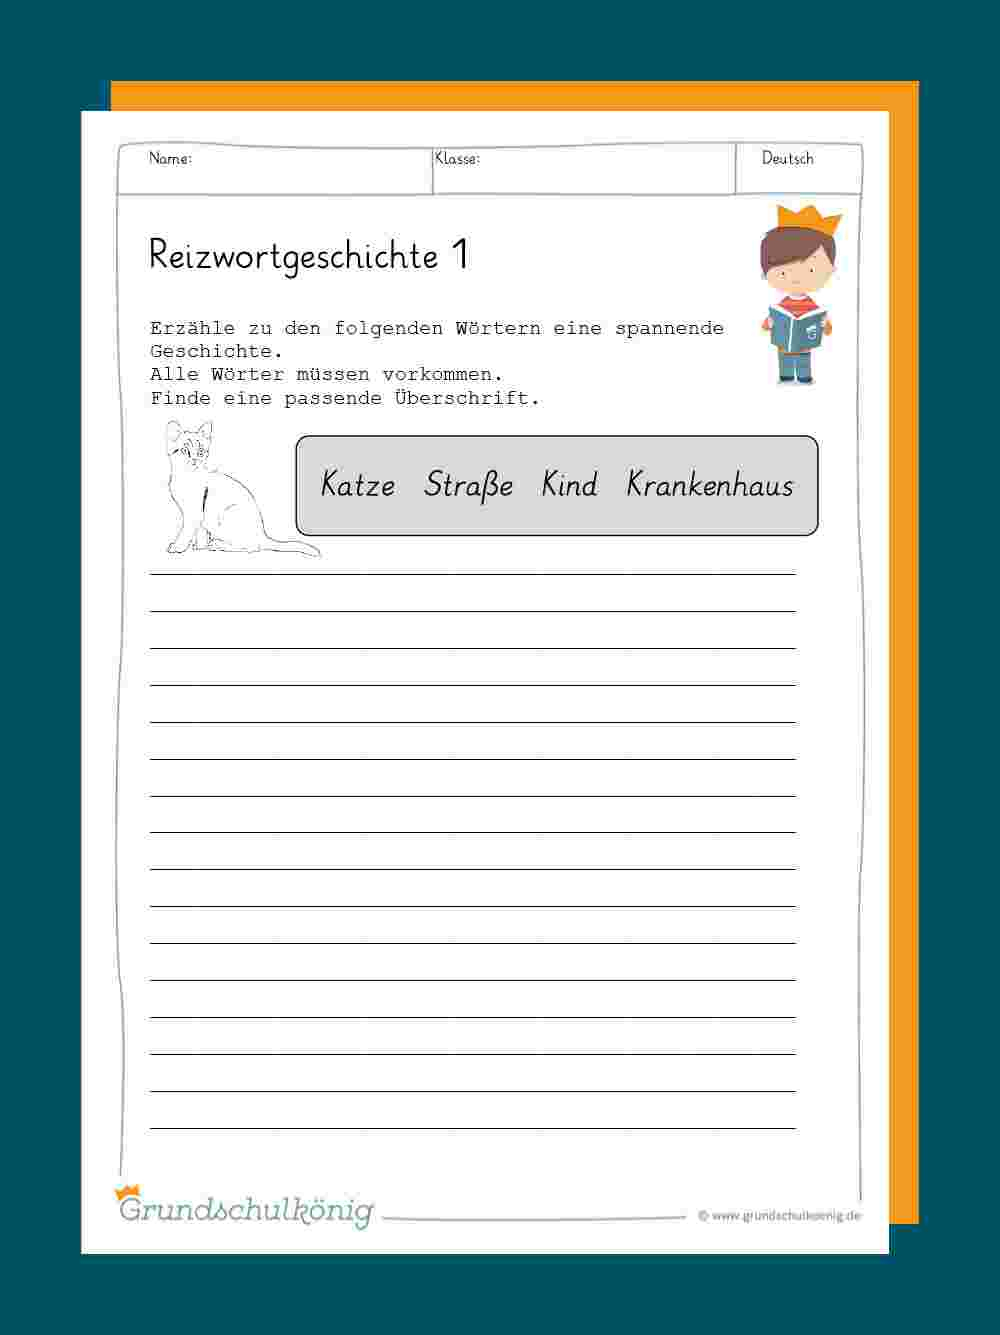 Reizwortgeschichte bei Deutsch Geschichte Schreiben 4 Klasse